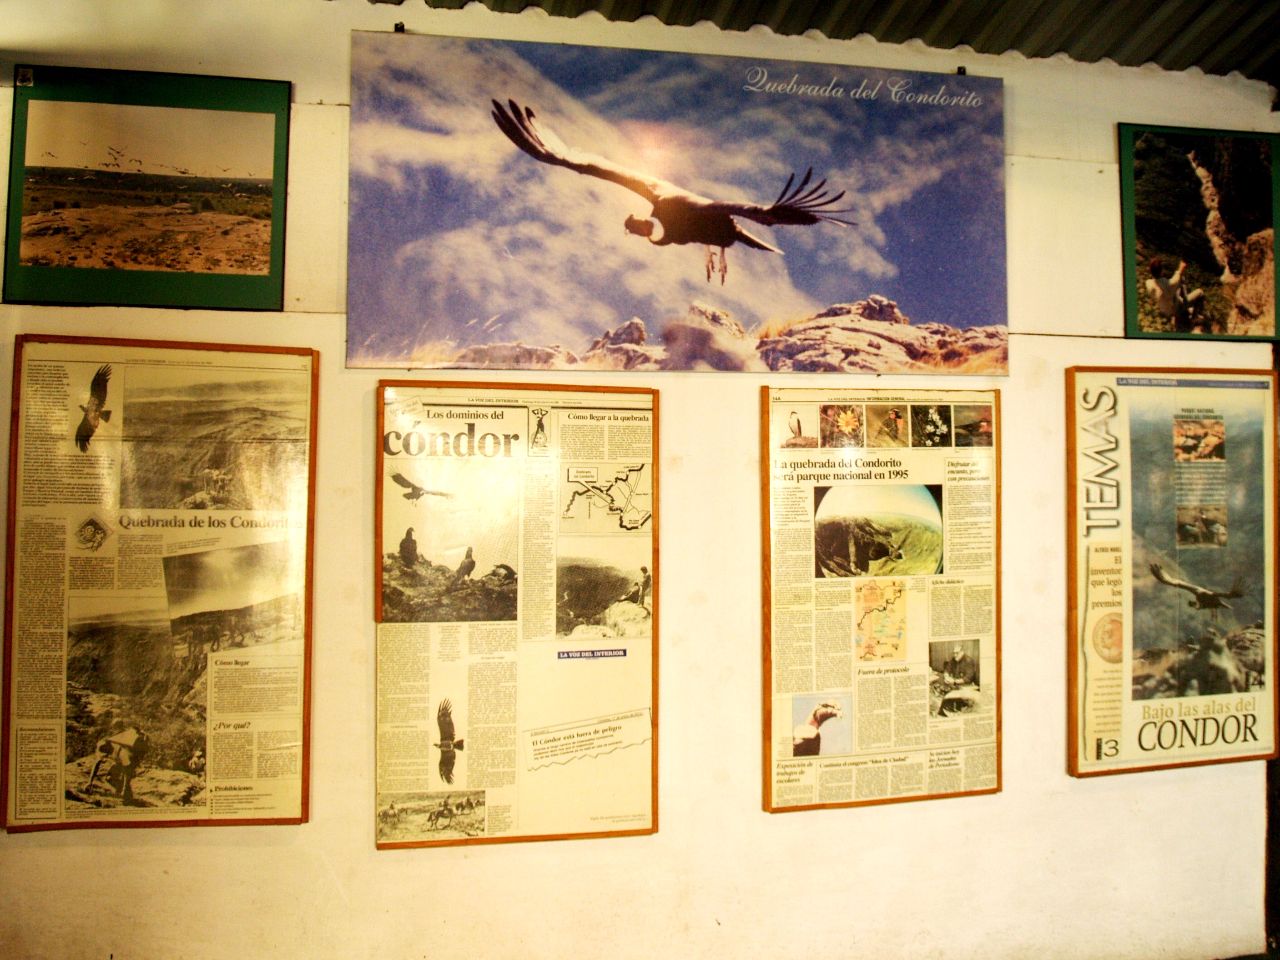 Начальная лётная школа кондоров и другие горные красоты Кебрада-дель-Кондорито Национальный Парк, Аргентина